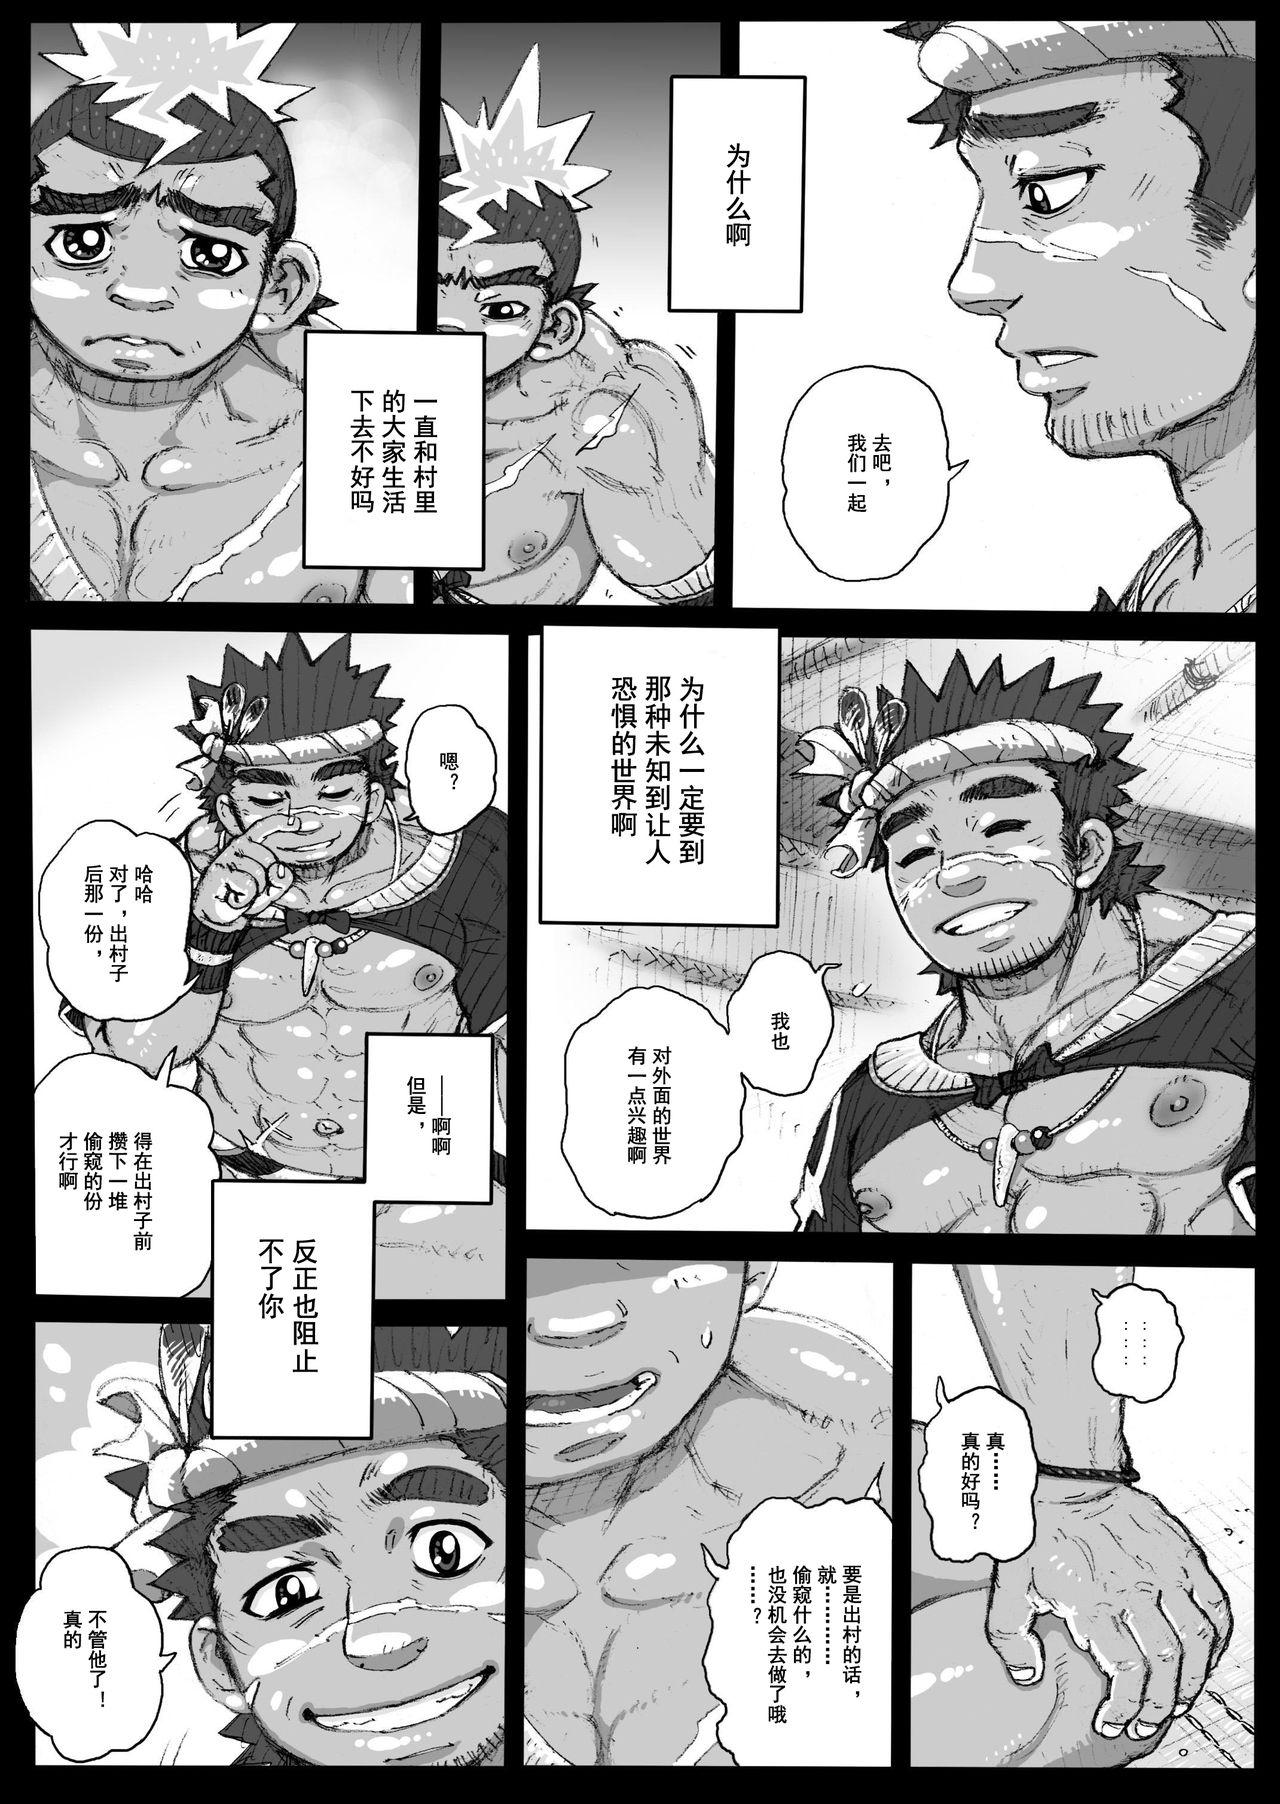 Hotfuck Hepoe no Kuni kara 2 - Daiji na Ketsui to Dainashi no Funiki no Maki Chicks - Page 9